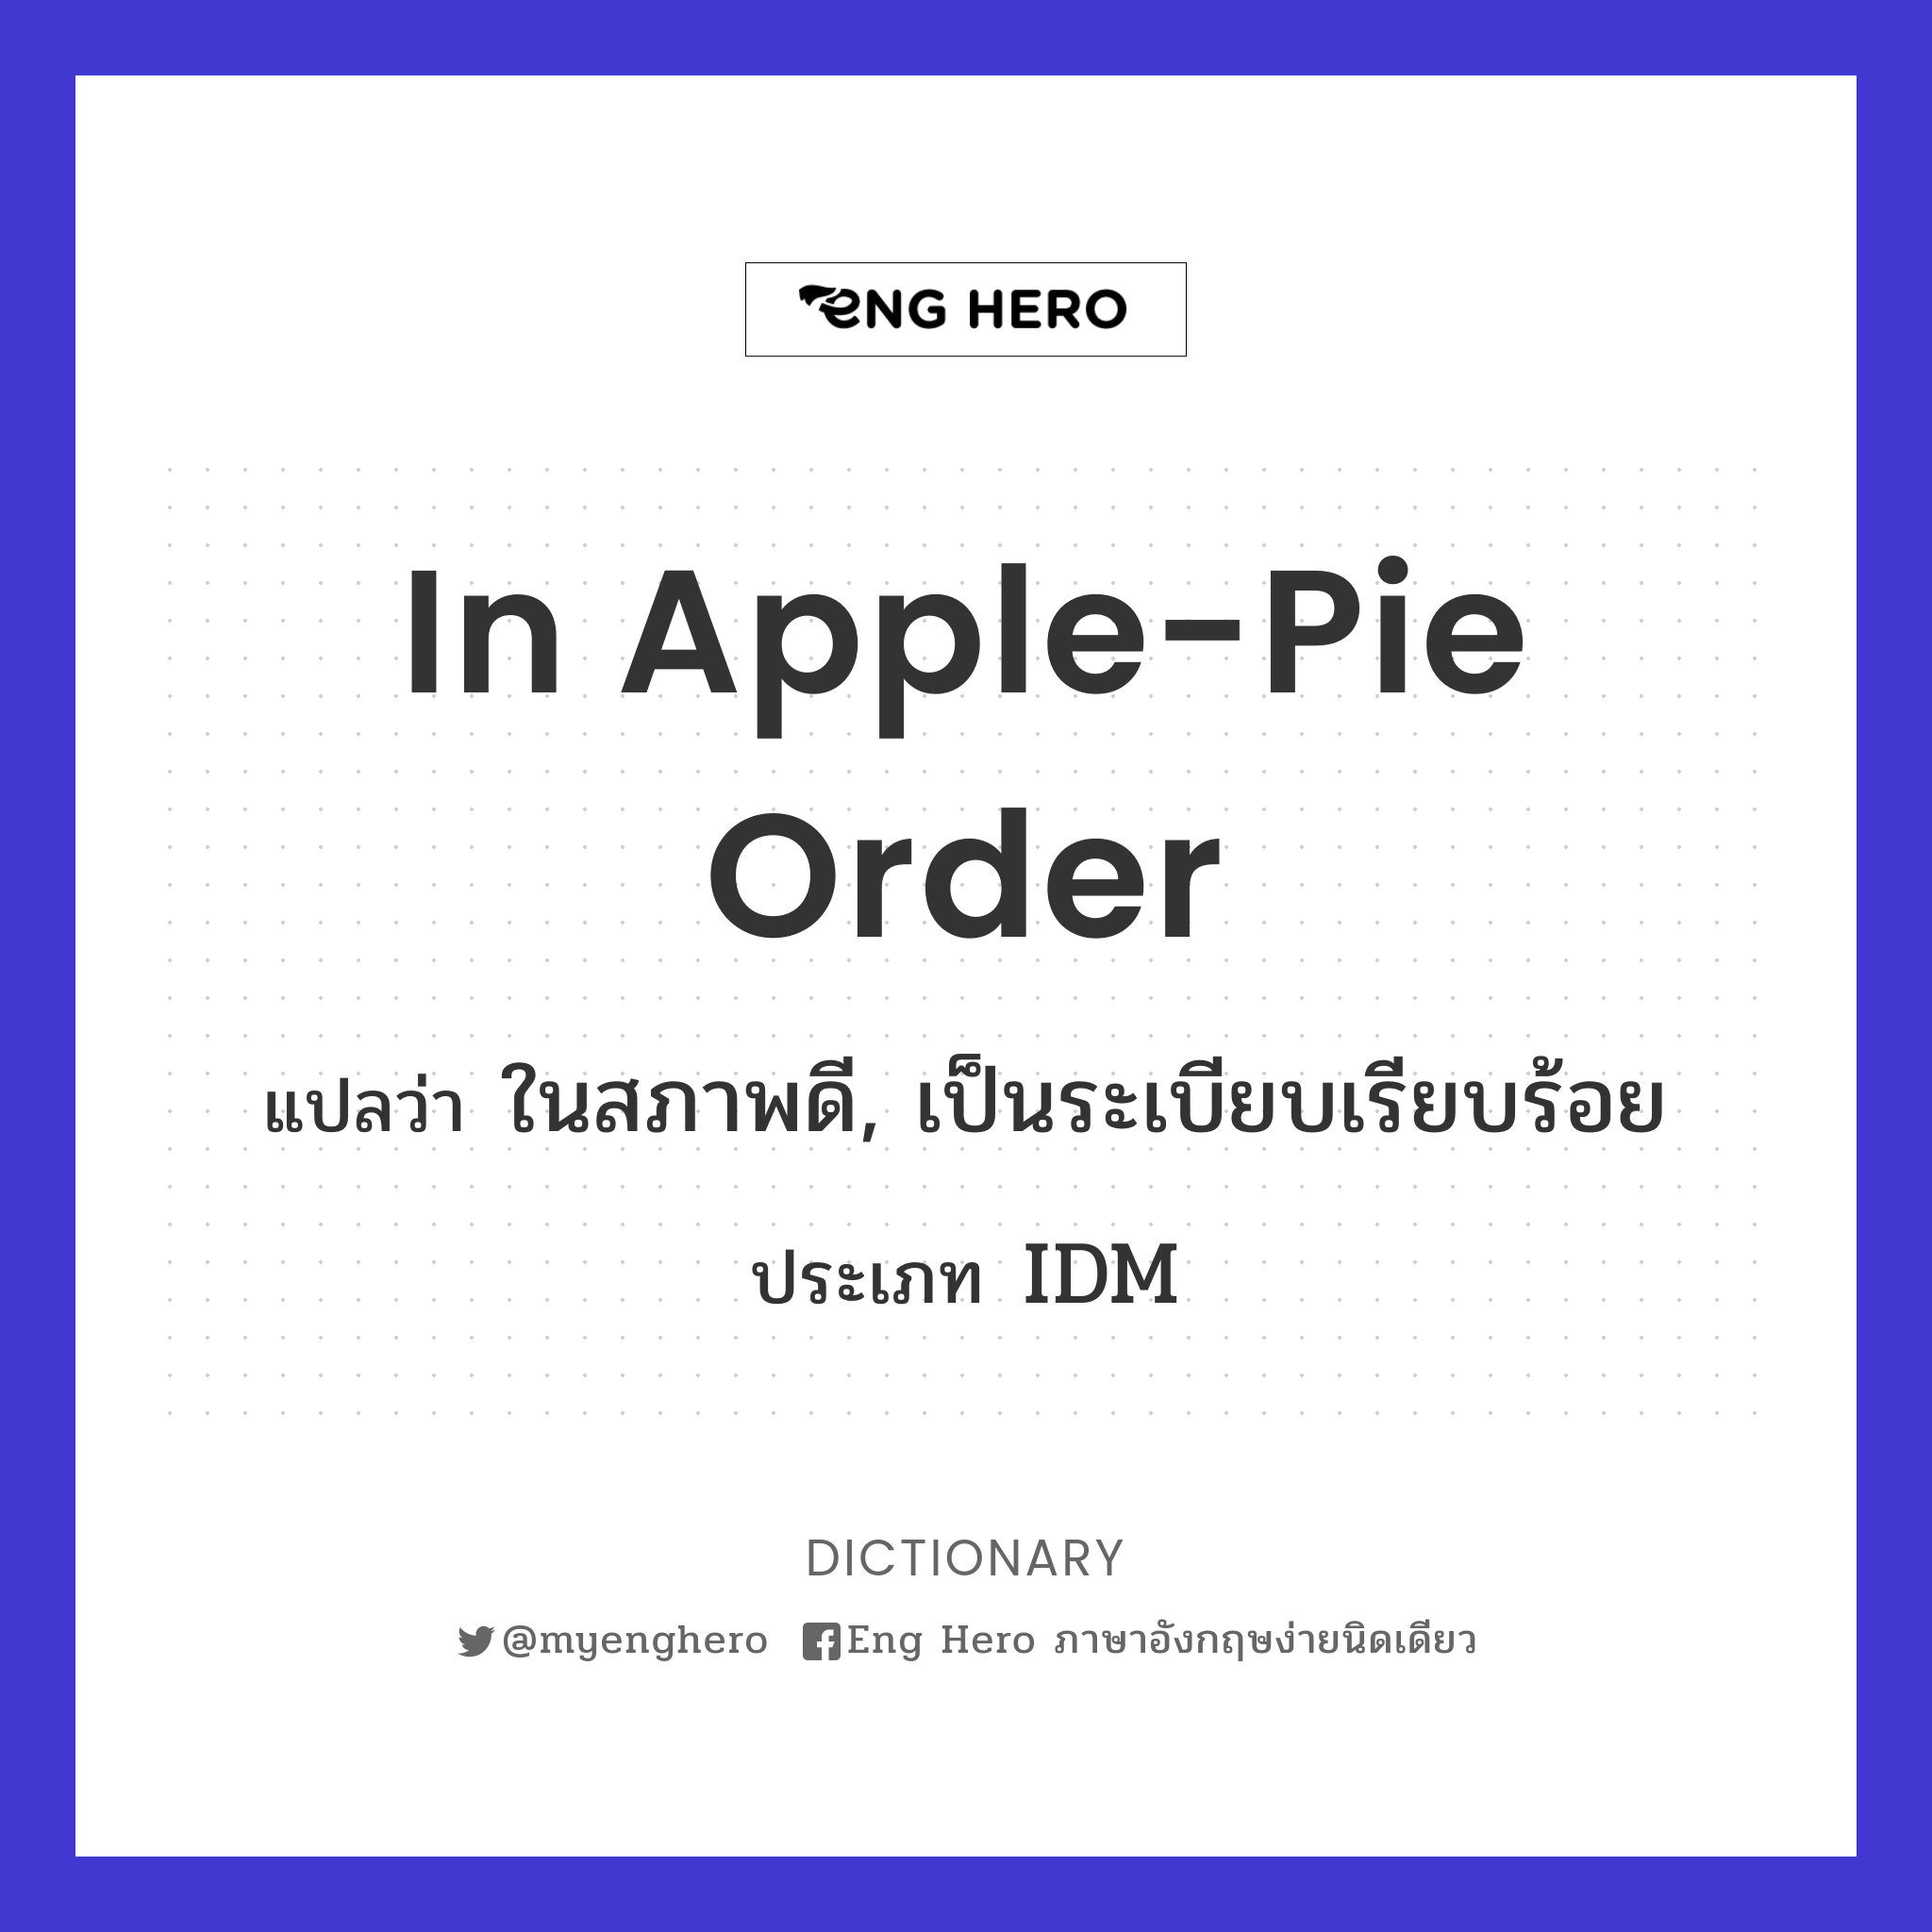 in apple-pie order